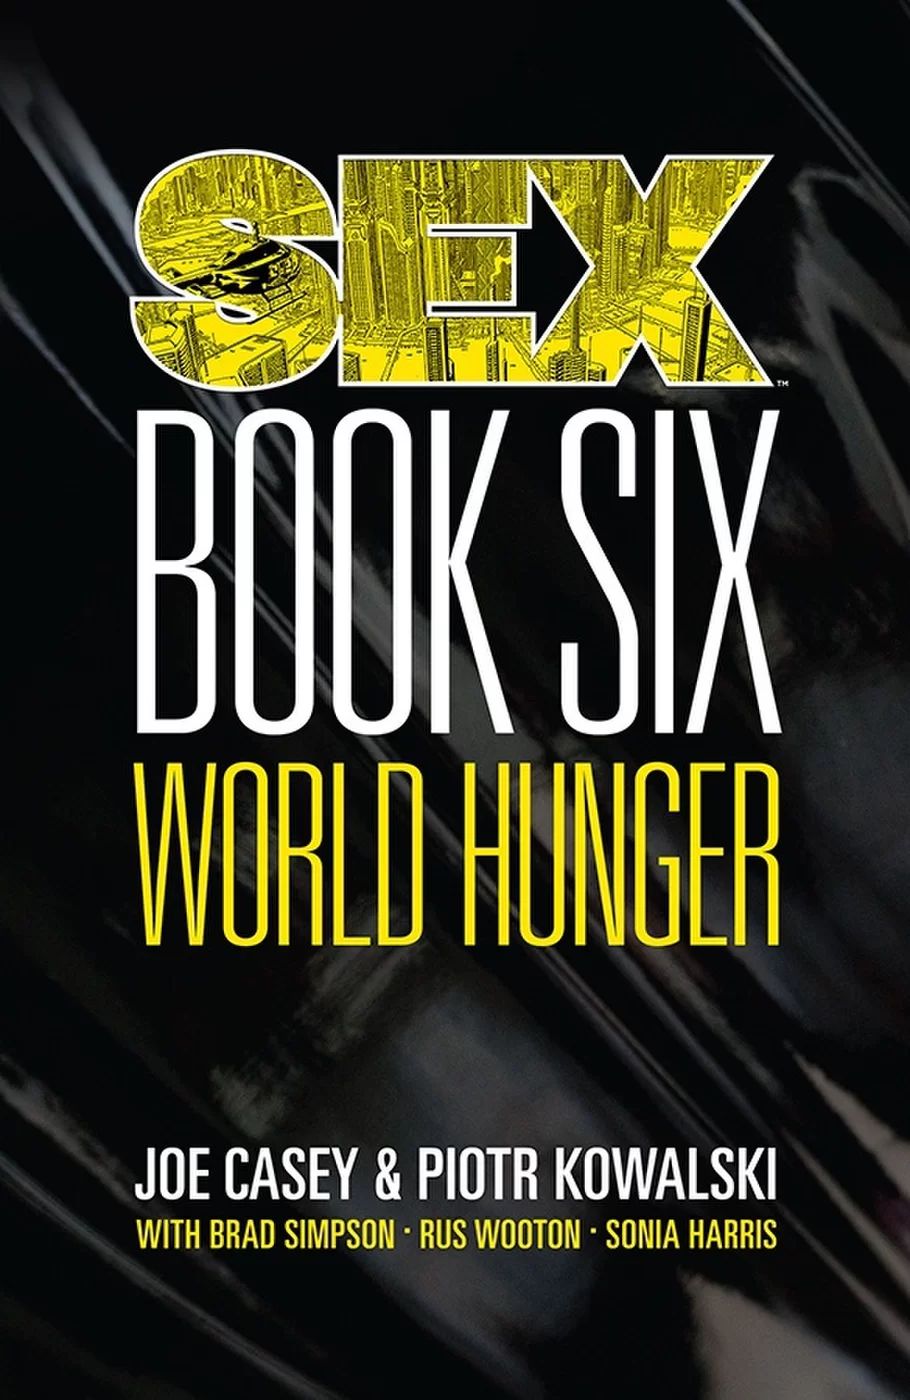 Sex, Volume 6: World Hunger